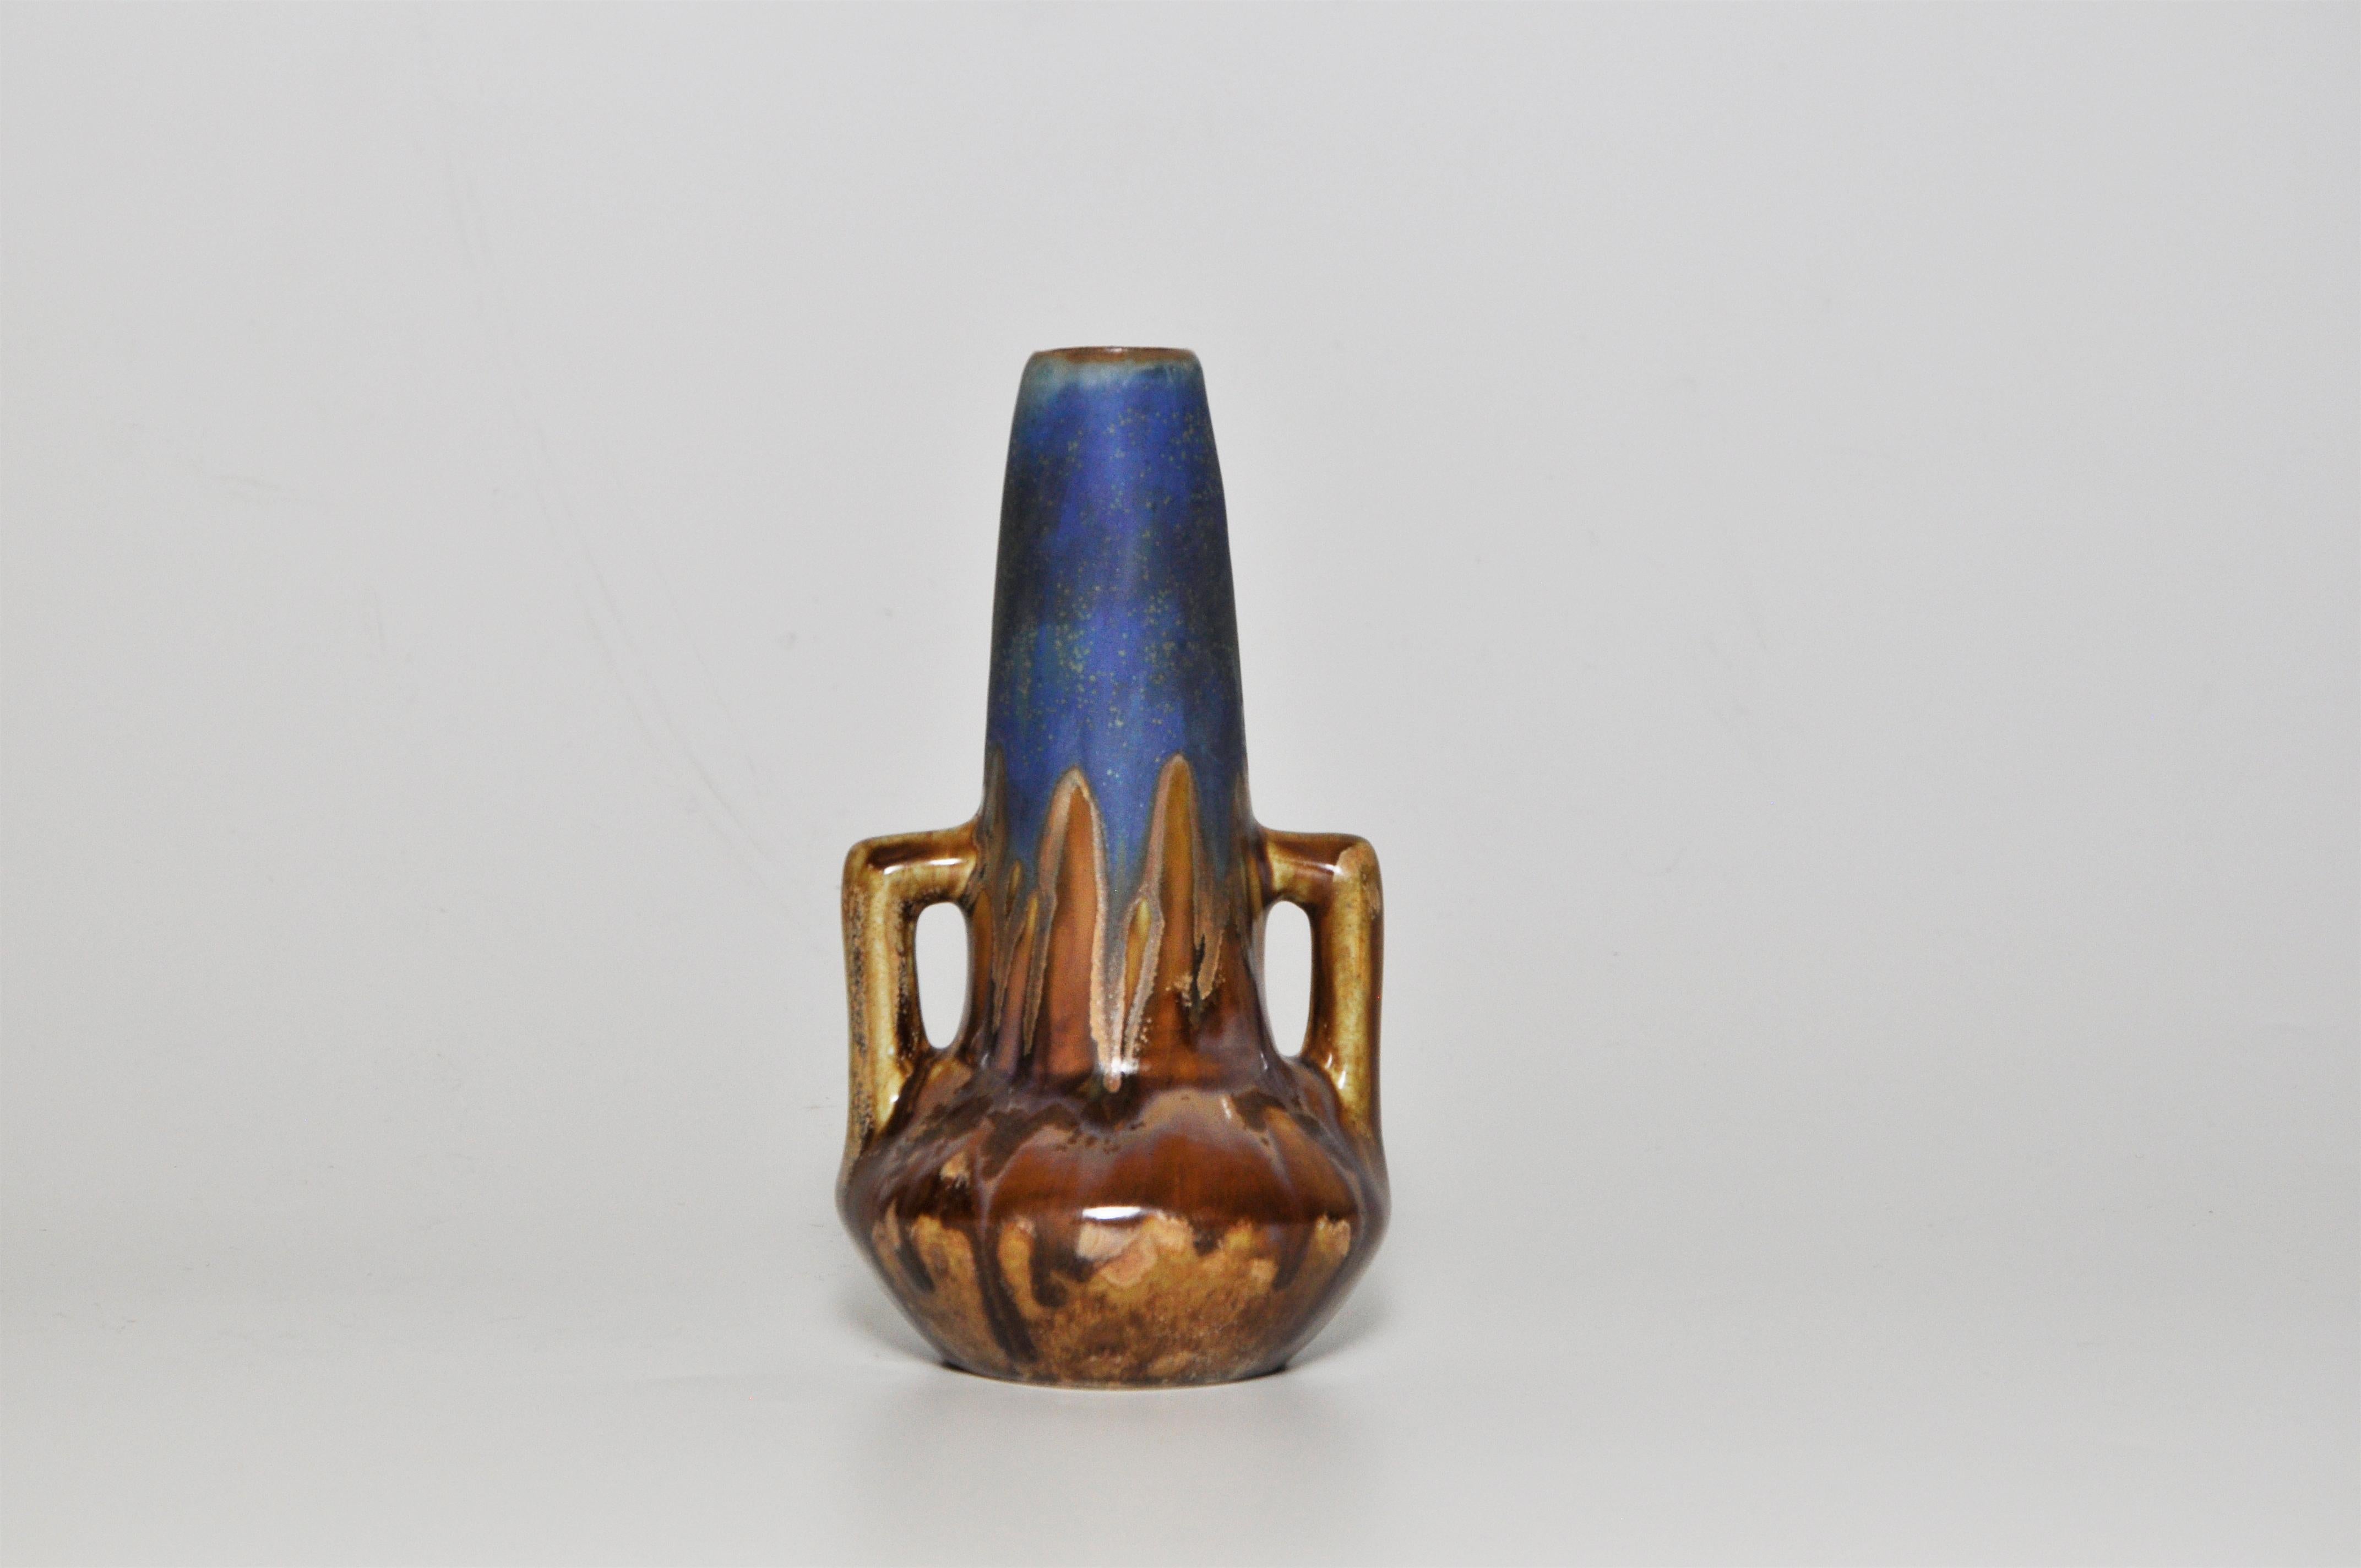 Poterie d'art française Metenier pot à vase en céramique bleue

Réalisé en grès et signé sur la base par 